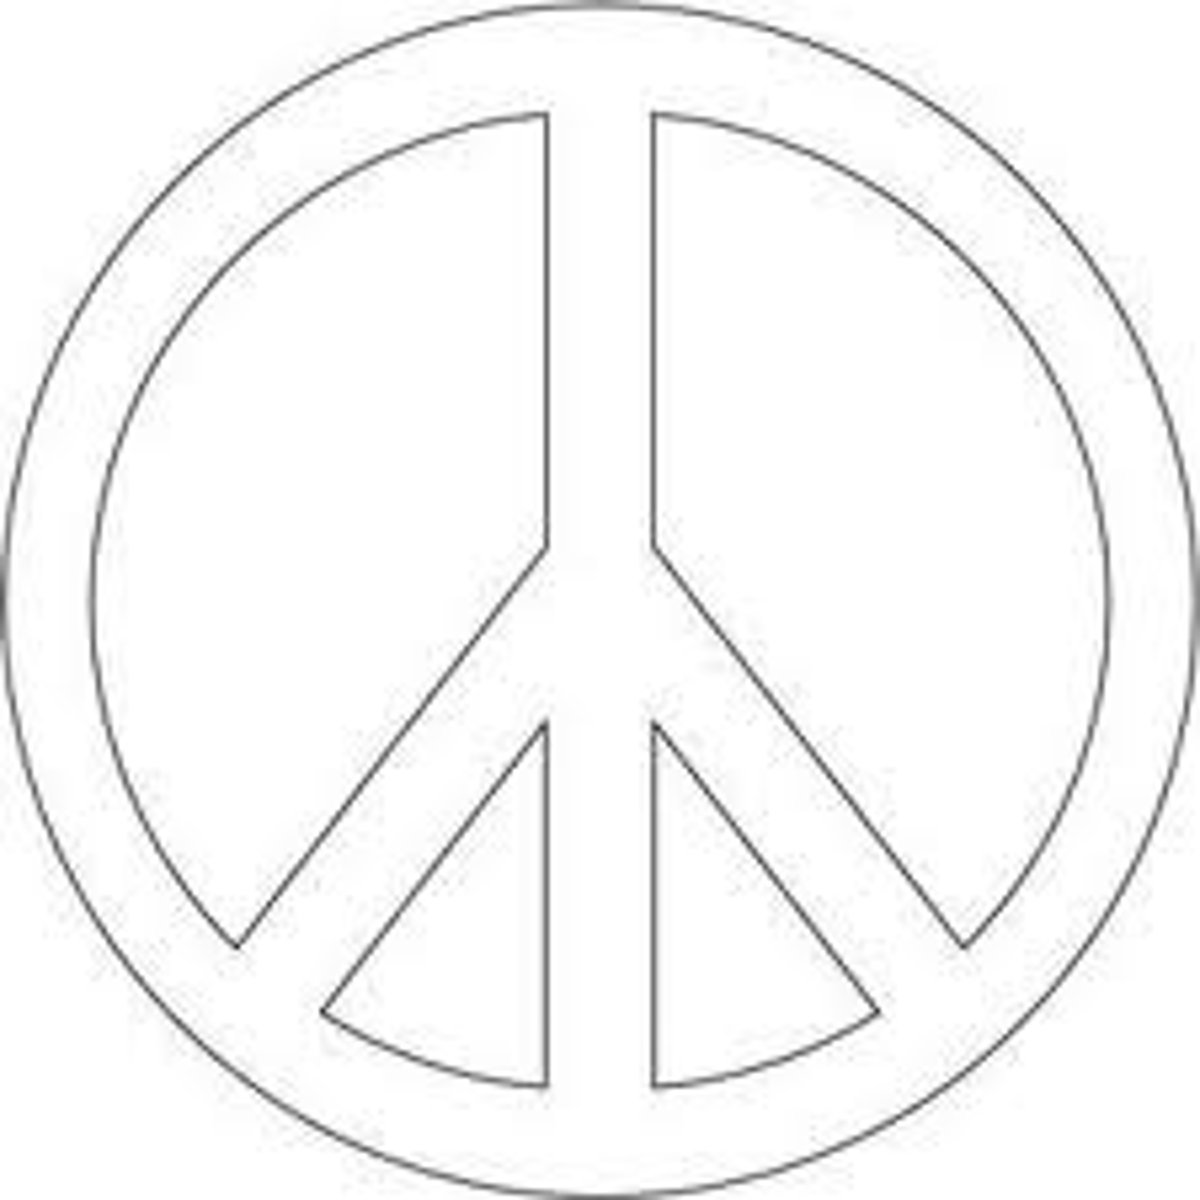 <p>to make peace</p>